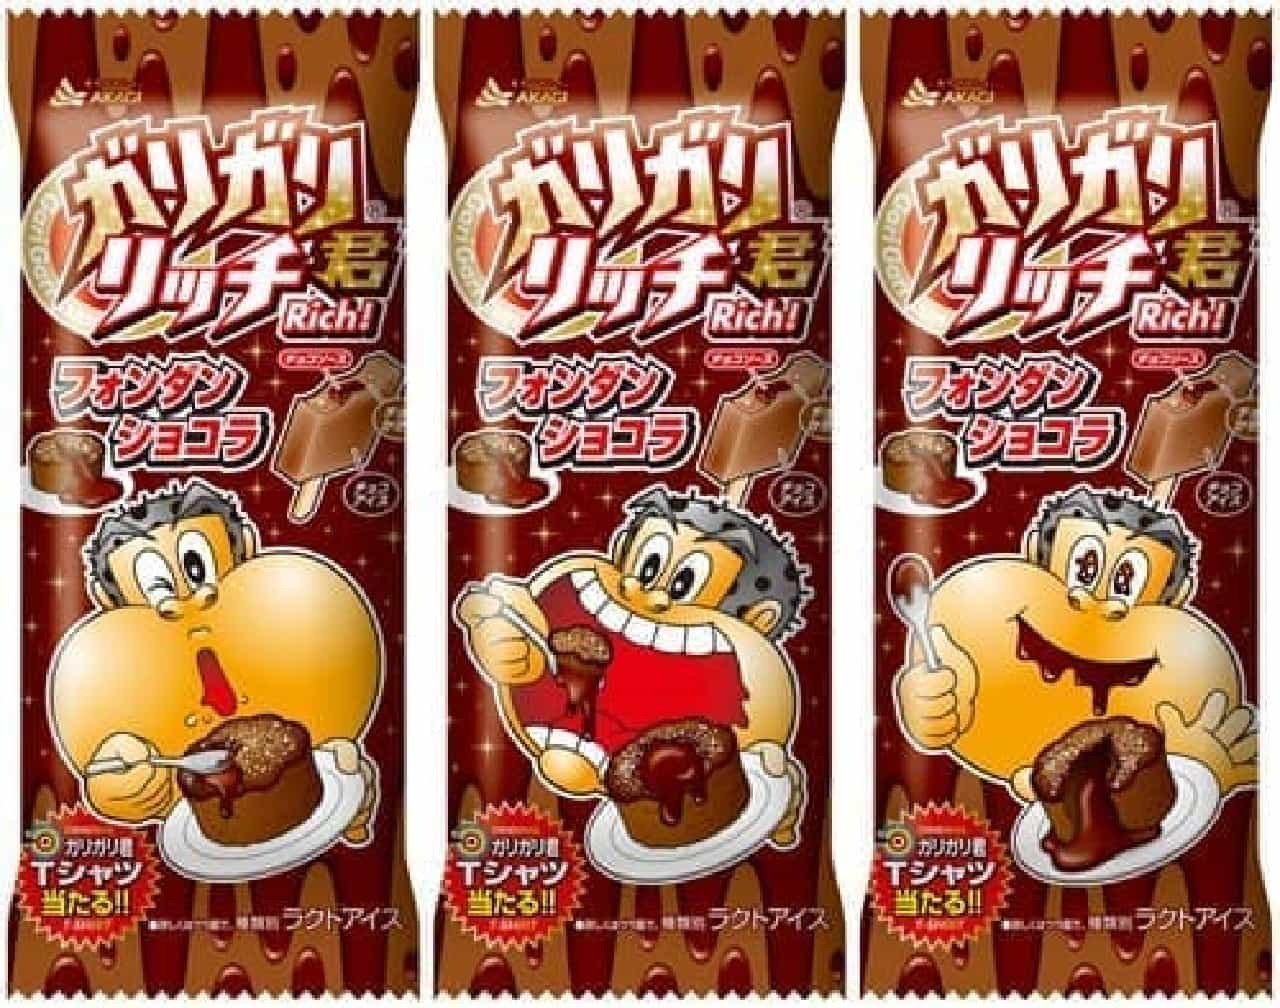 "Gari-Gari-kun Rich Fondant Chocolat"